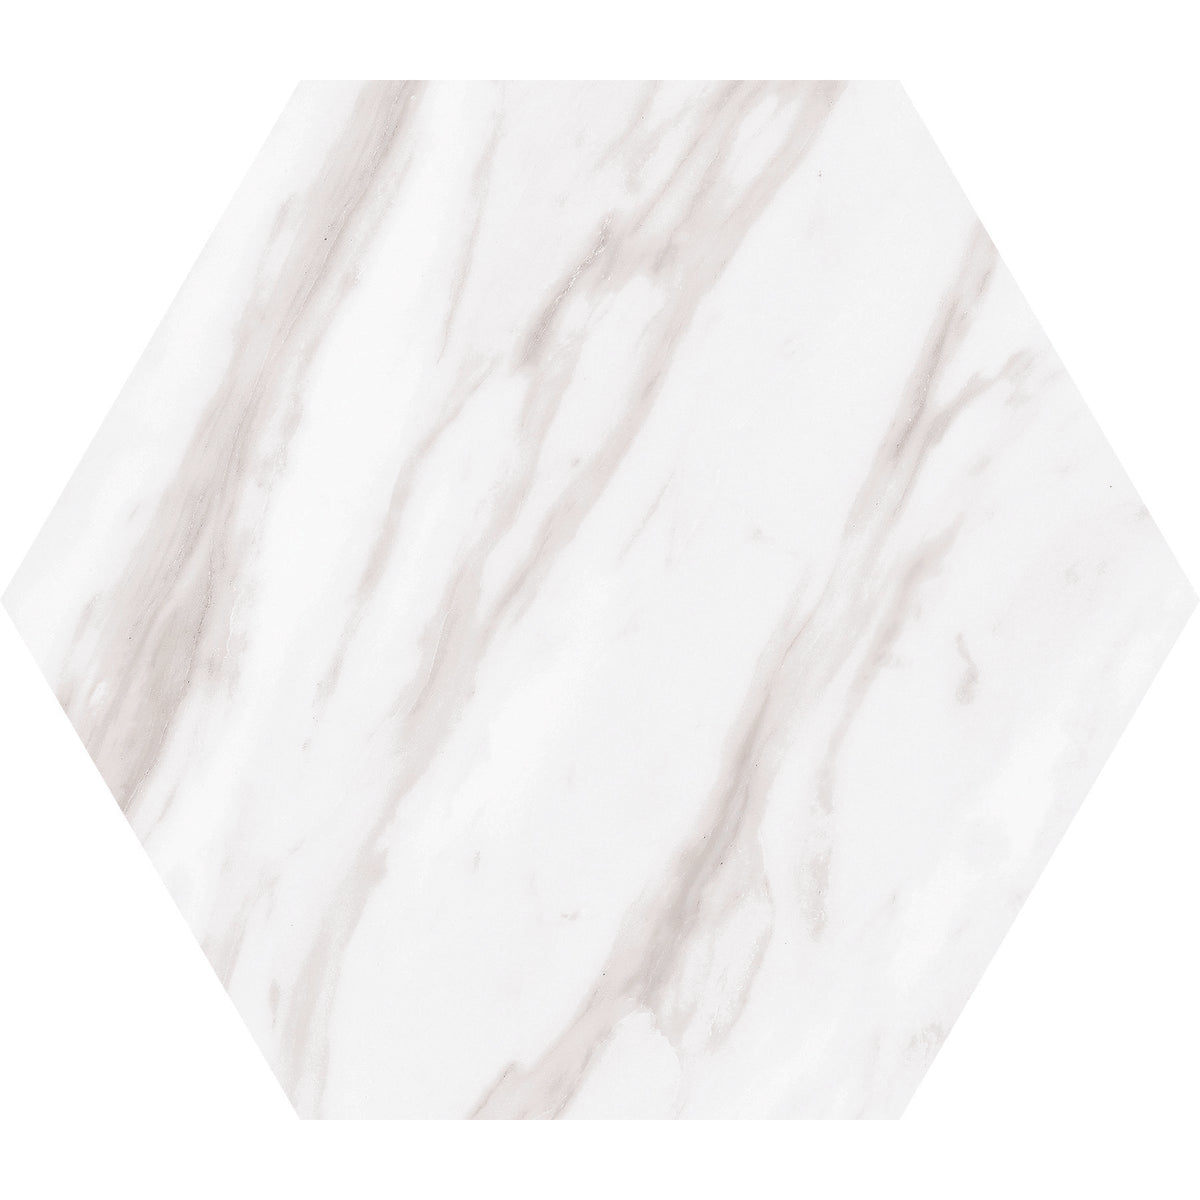 Daltile - Perpetuo - 8 in. Hexagon Glazed Porcelain Floor Tile - Timeless White Matte 3